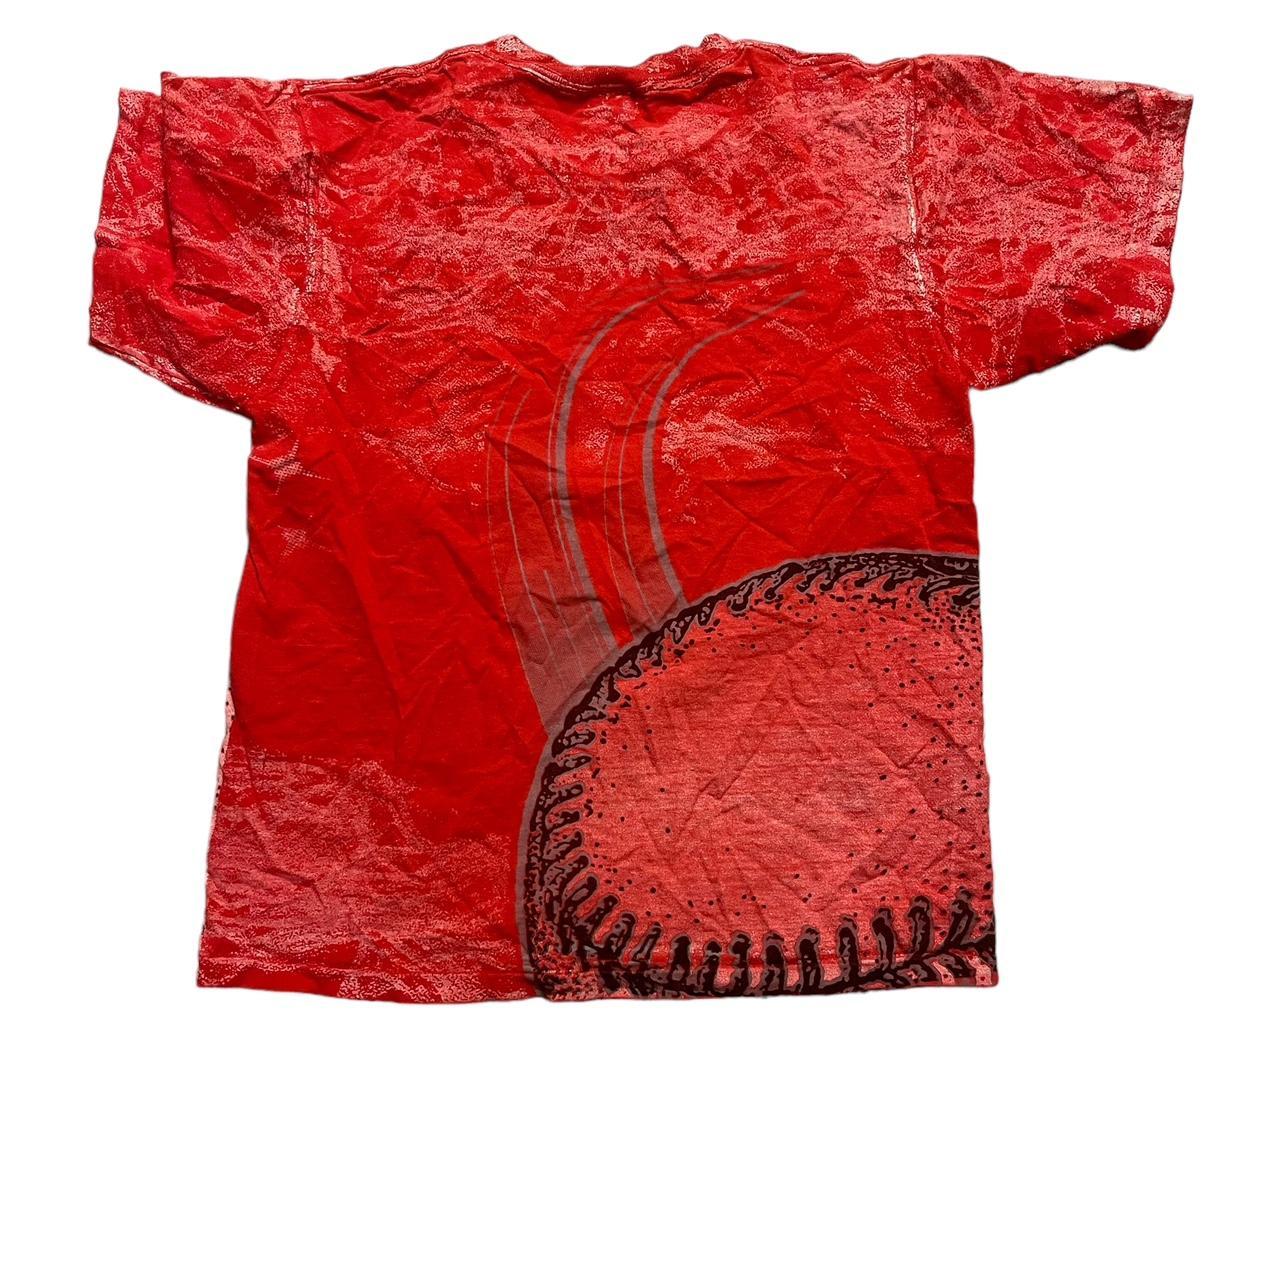 Vintage St. Louis Cardinals T-Shirt Men's Size - Depop